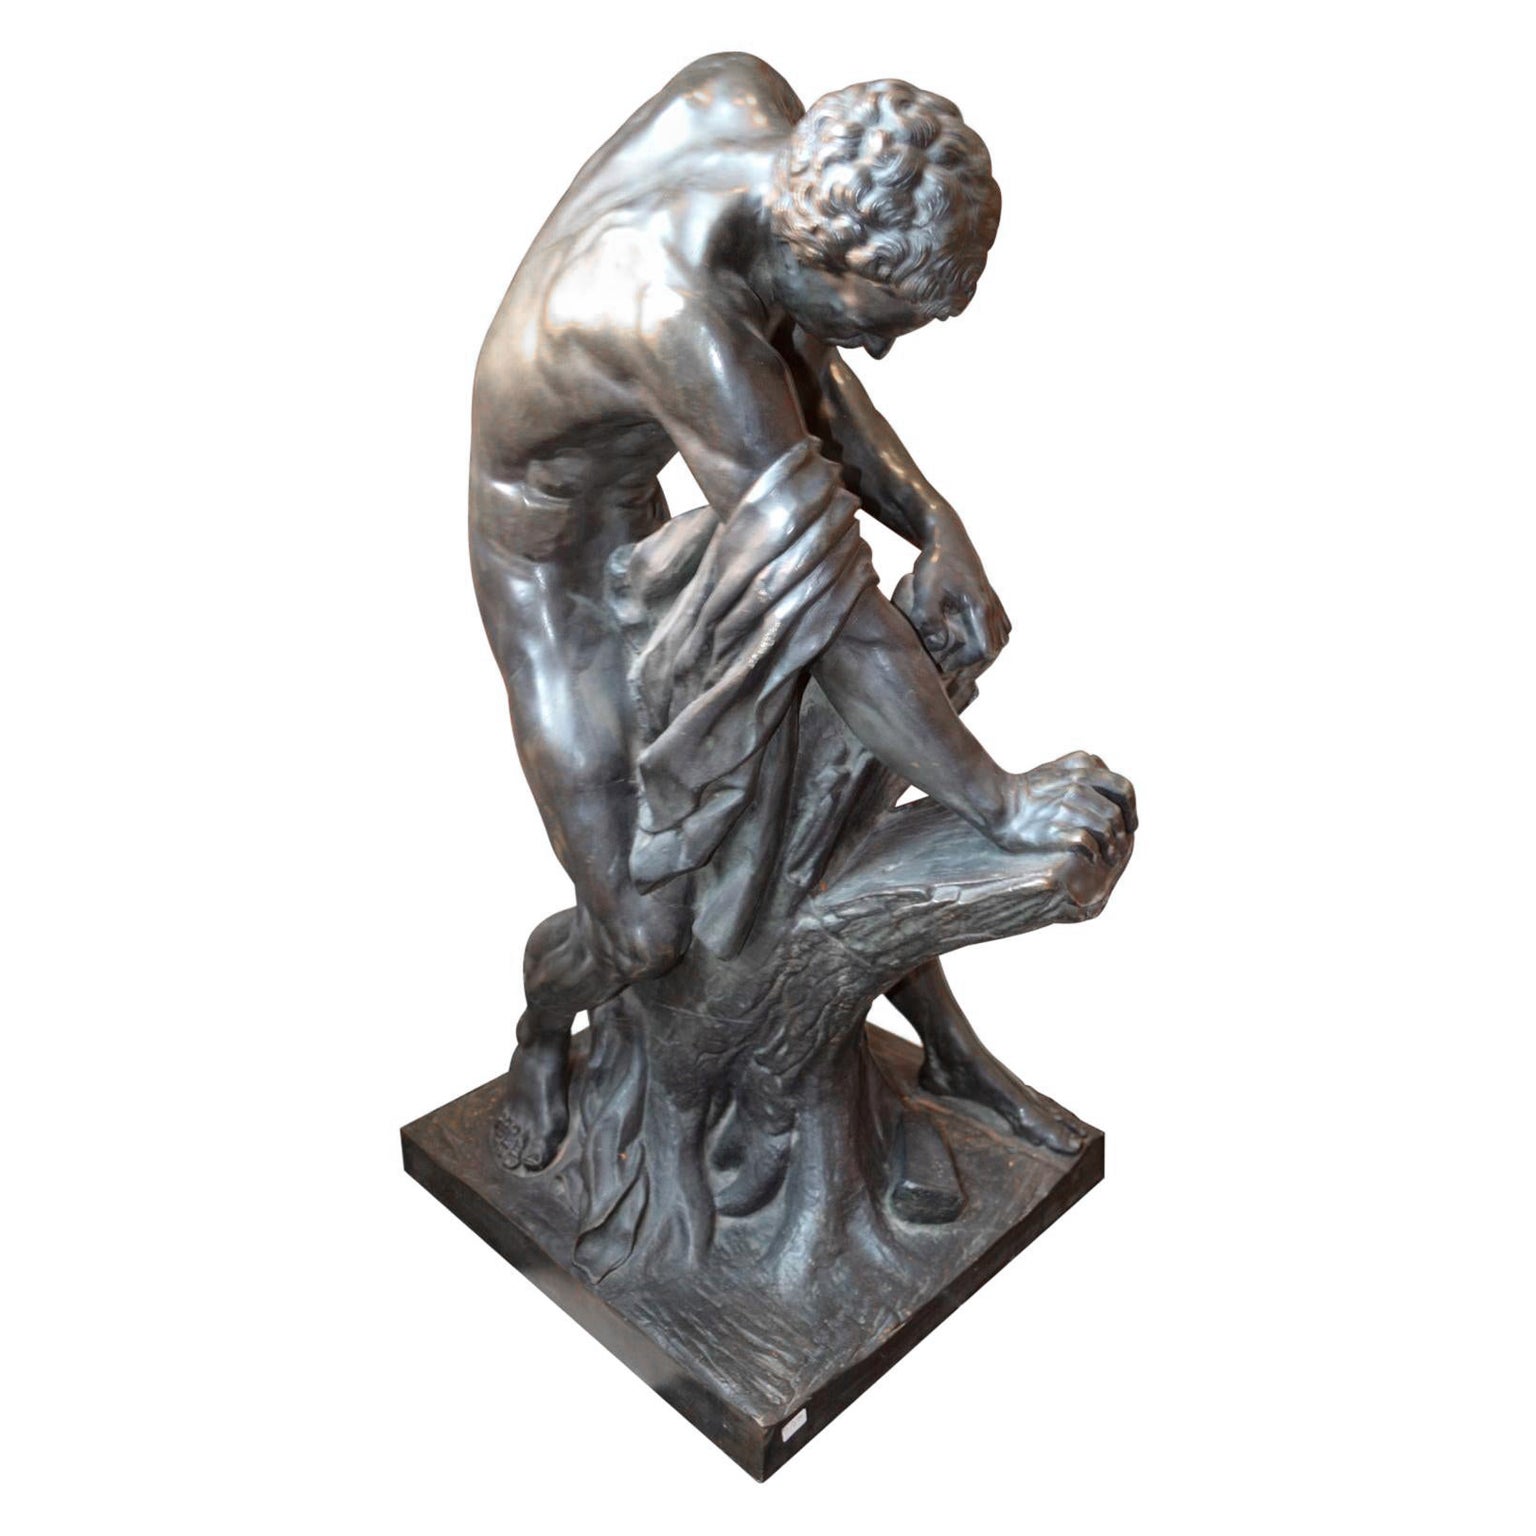 Assez grande statue française en bronze du XIXe siècle représentant le Milo de Croton sur un socle en marbre à gradins, d'après la statue originale en marbre du sculpteur Edme Dumont (1720-1775) exposée au Louvre. Grâce à la présentation de cette